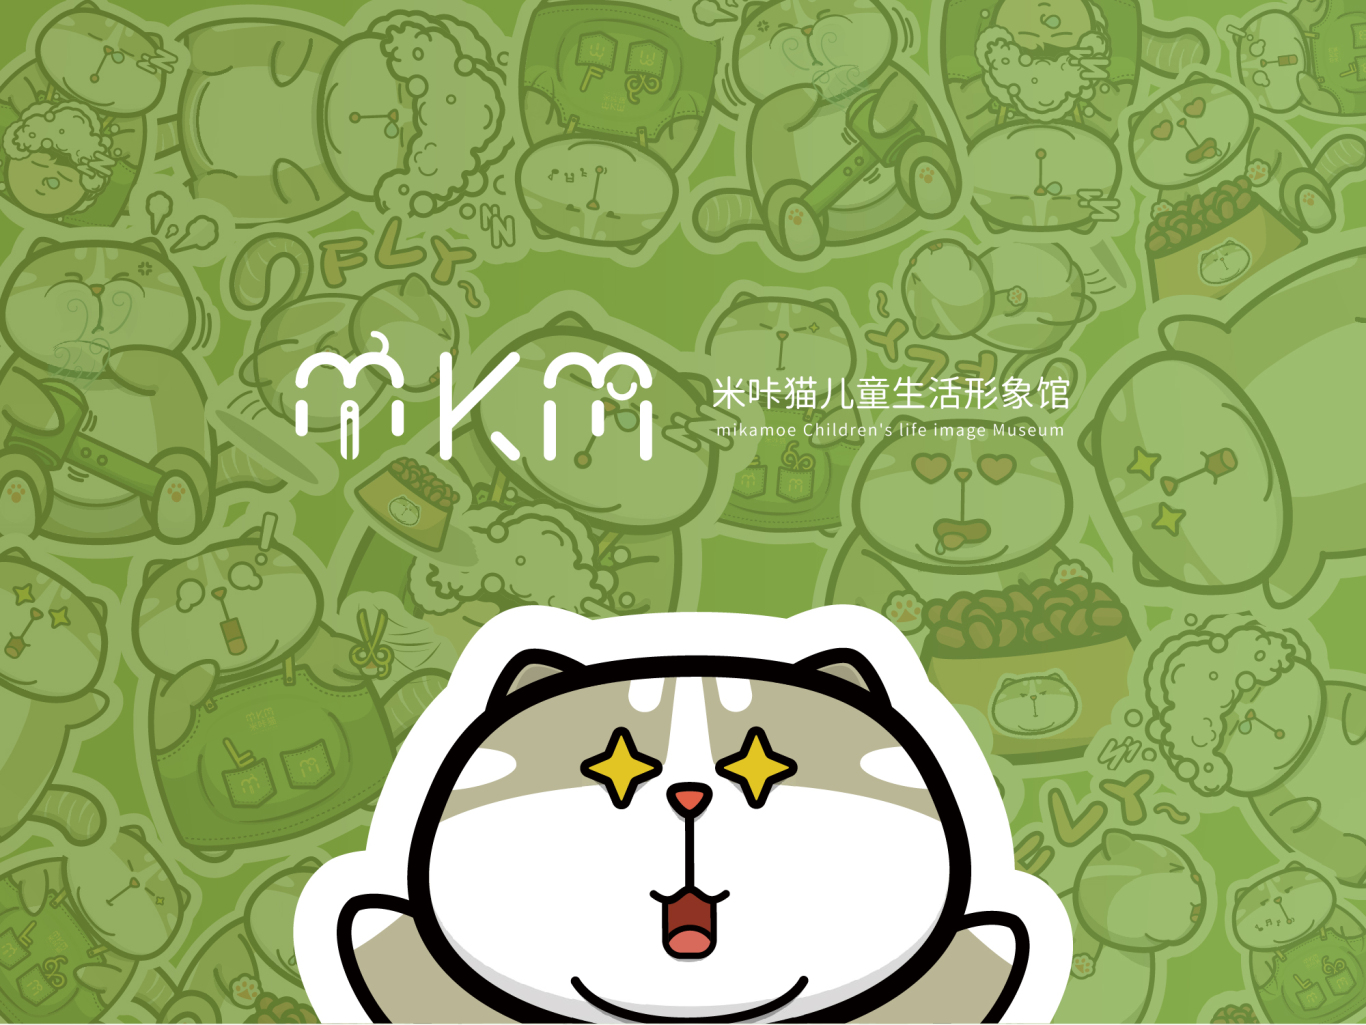 米咔猫儿童生活形象馆图10